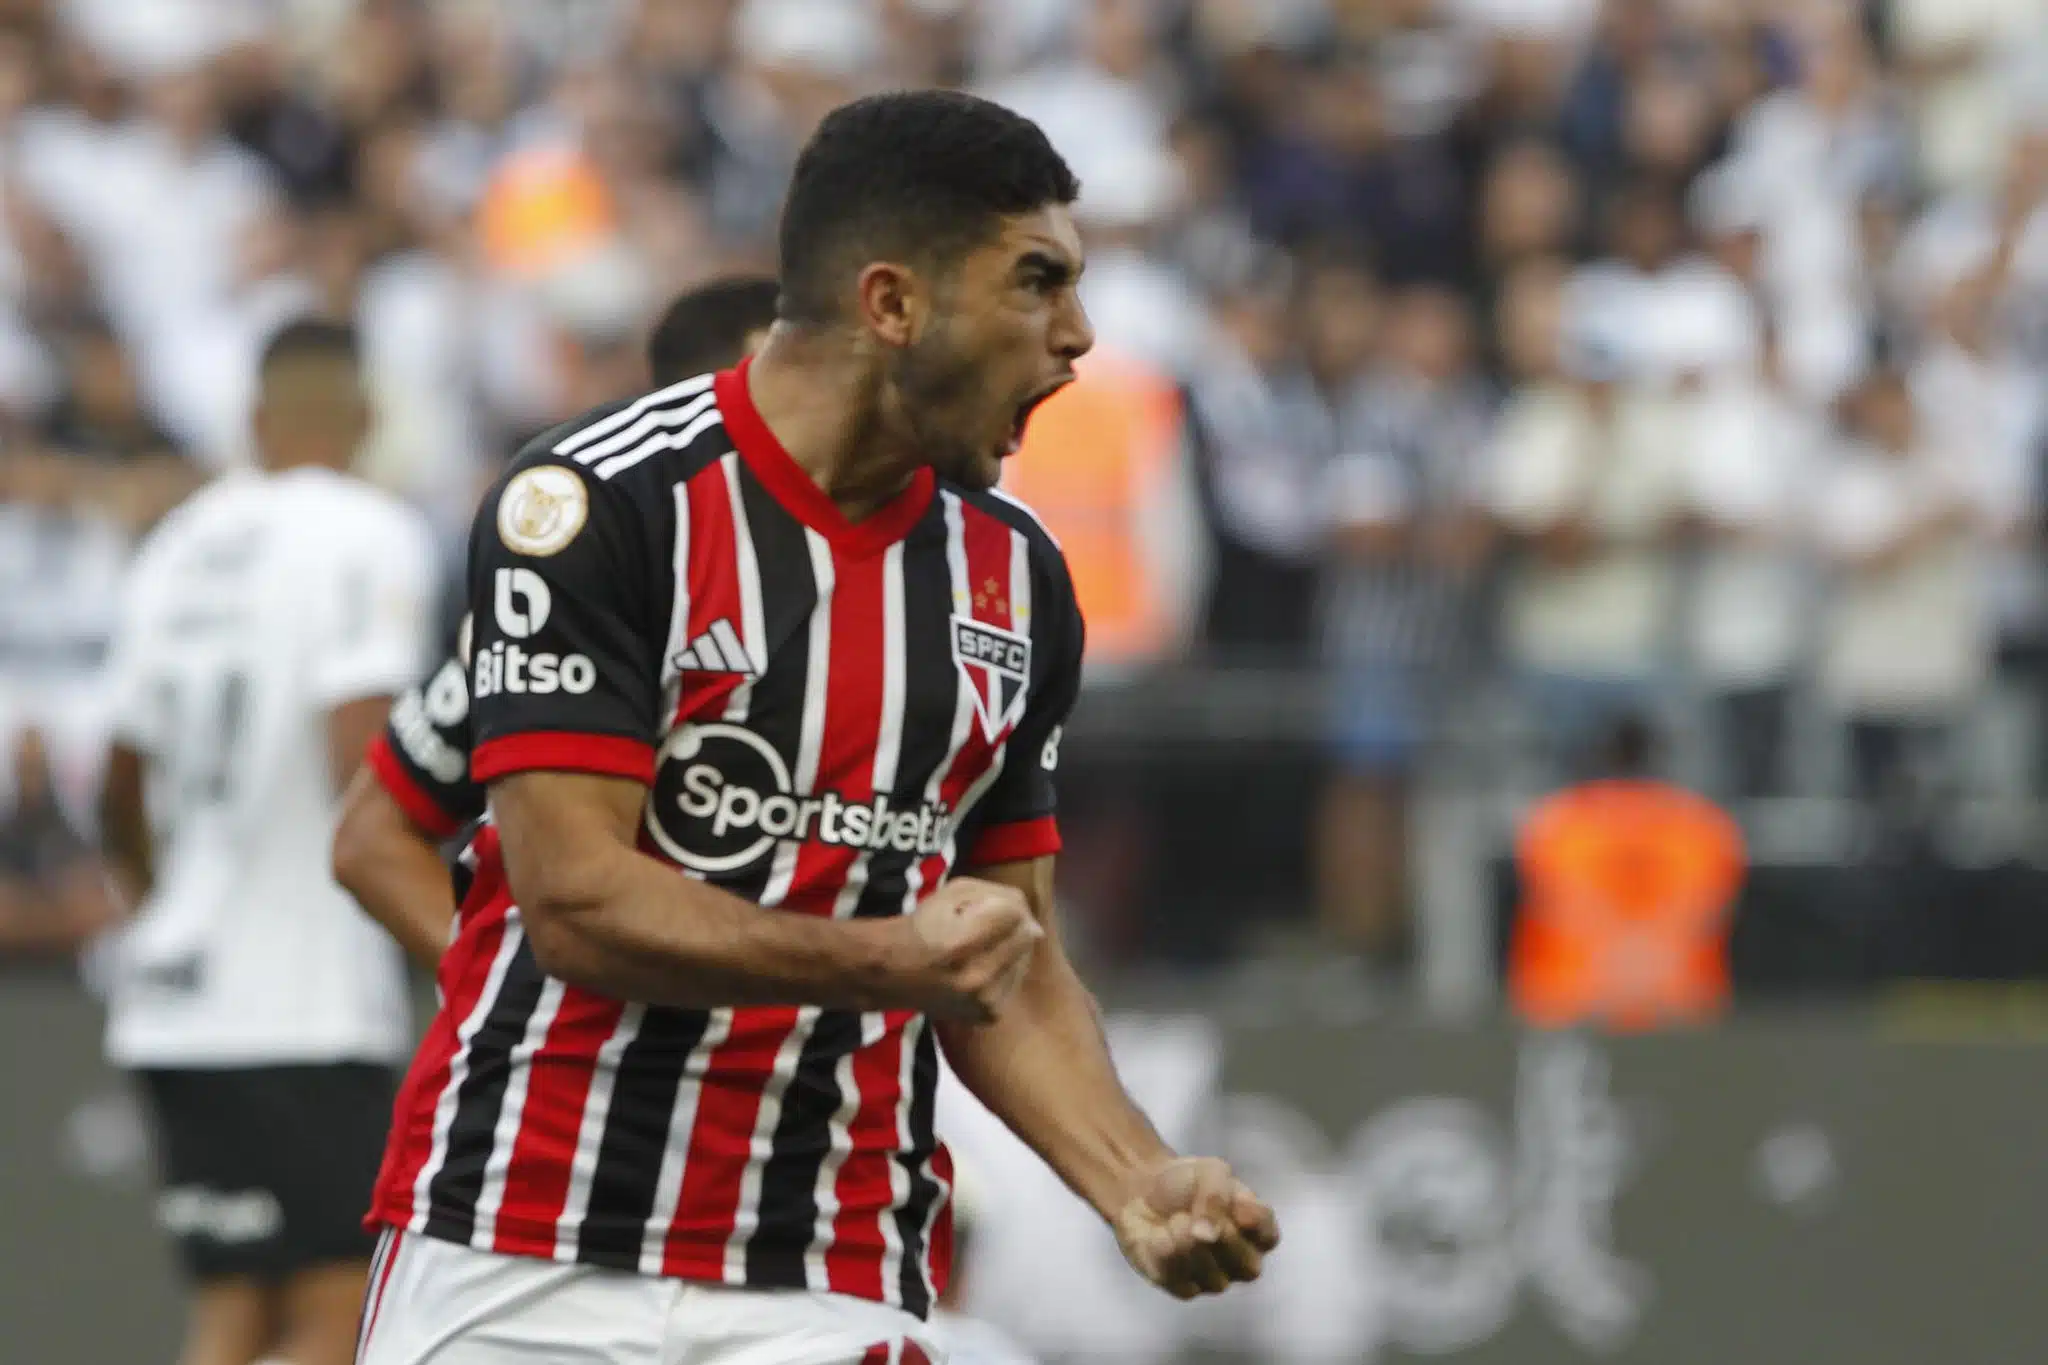 Marco Aurélio Cunha elogia jogador do São Paulo por atitude no Majestoso